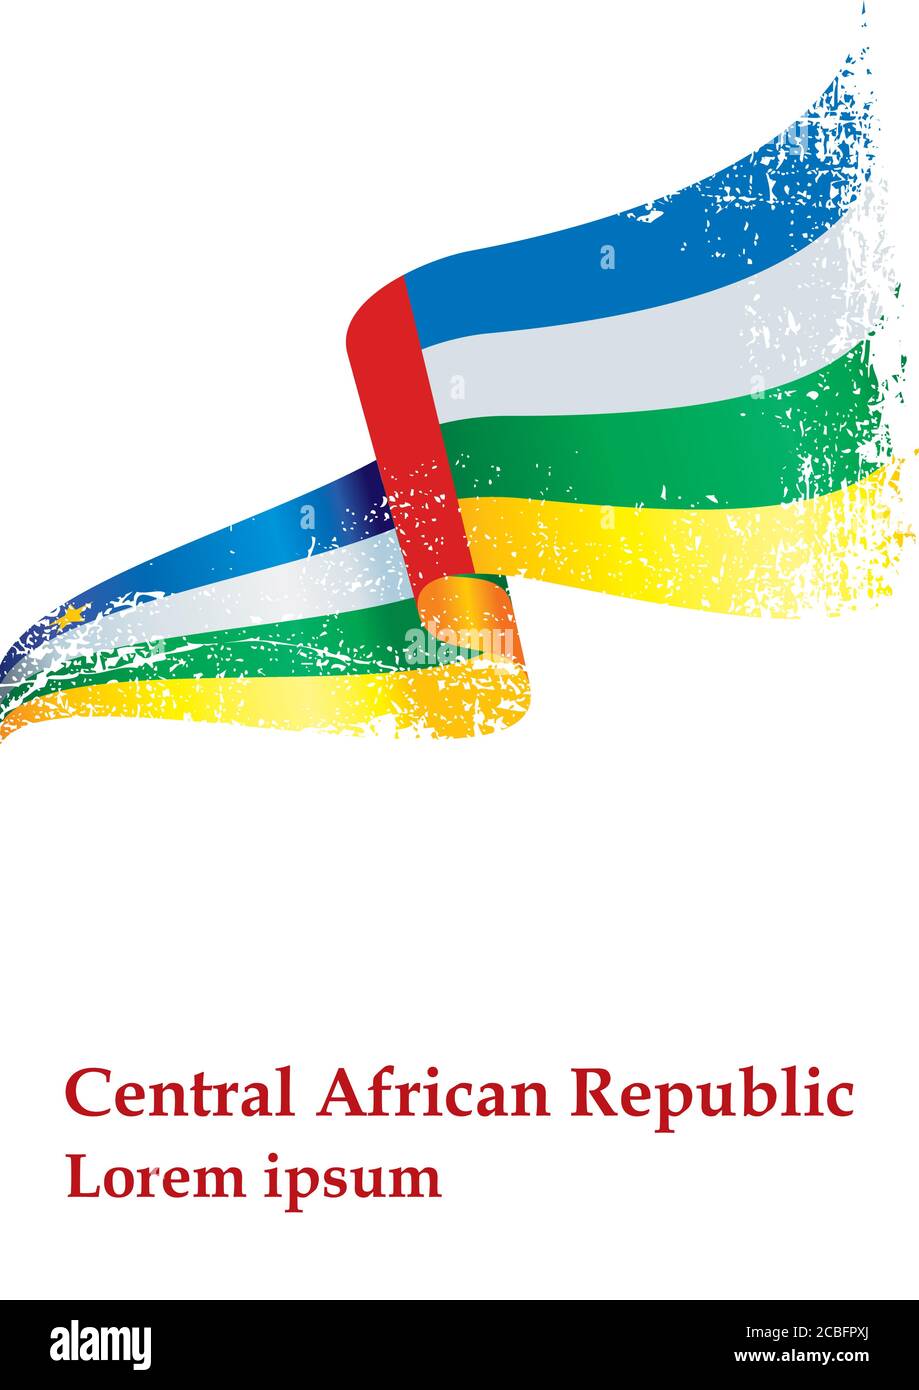 Drapeau de la République centrafricaine, République centrafricaine. Modèle pour la conception d'une bourse un document avec le drapeau de la République centrafricaine Illustration de Vecteur